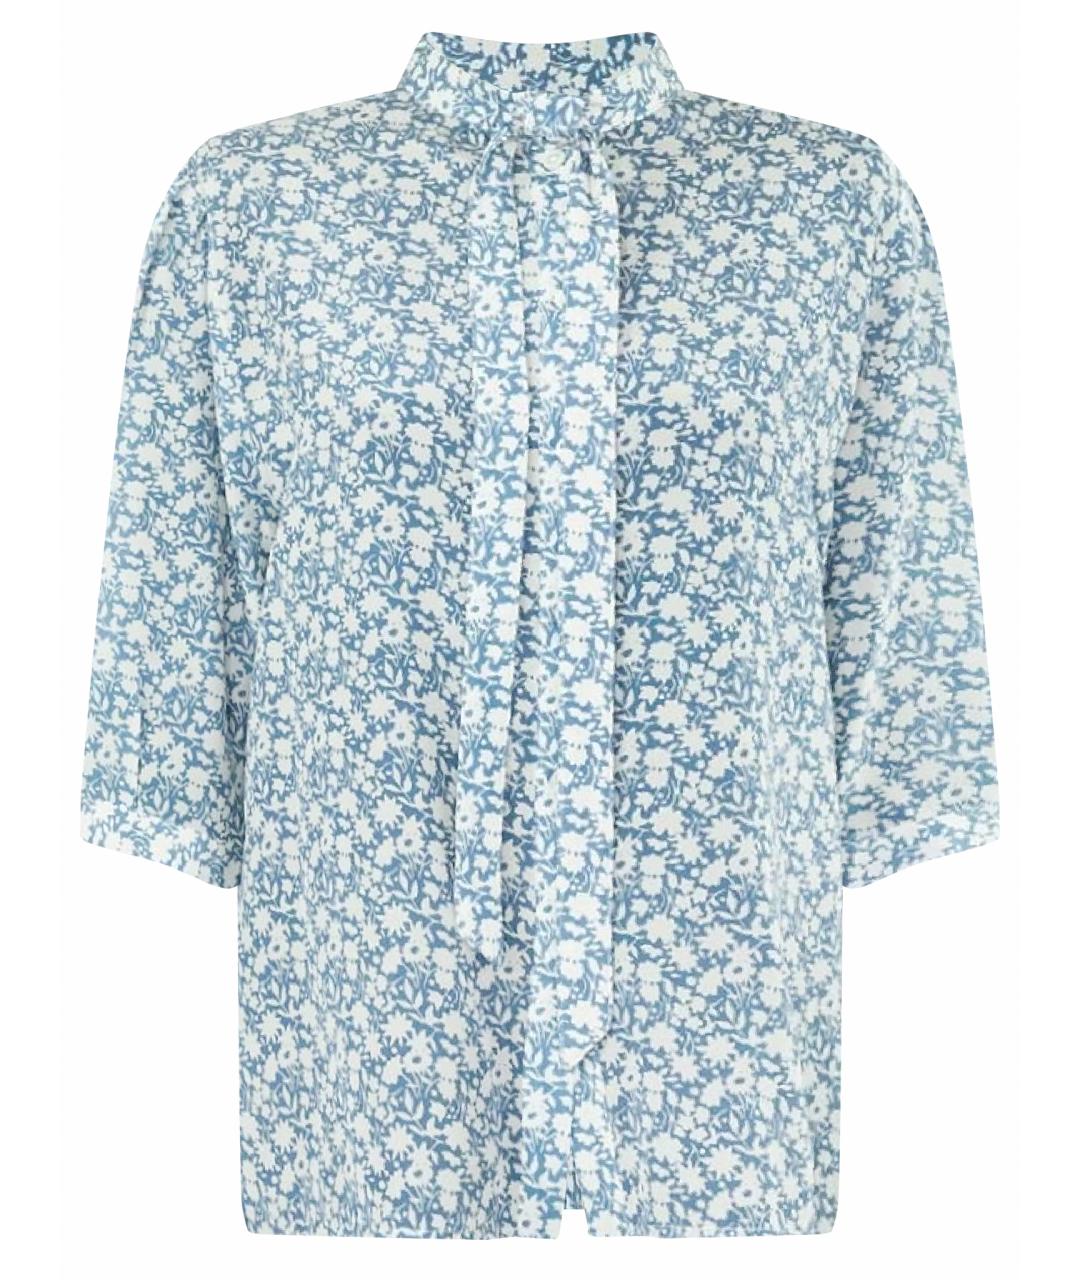 CELINE PRE-OWNED Голубая шелковая блузы, фото 1